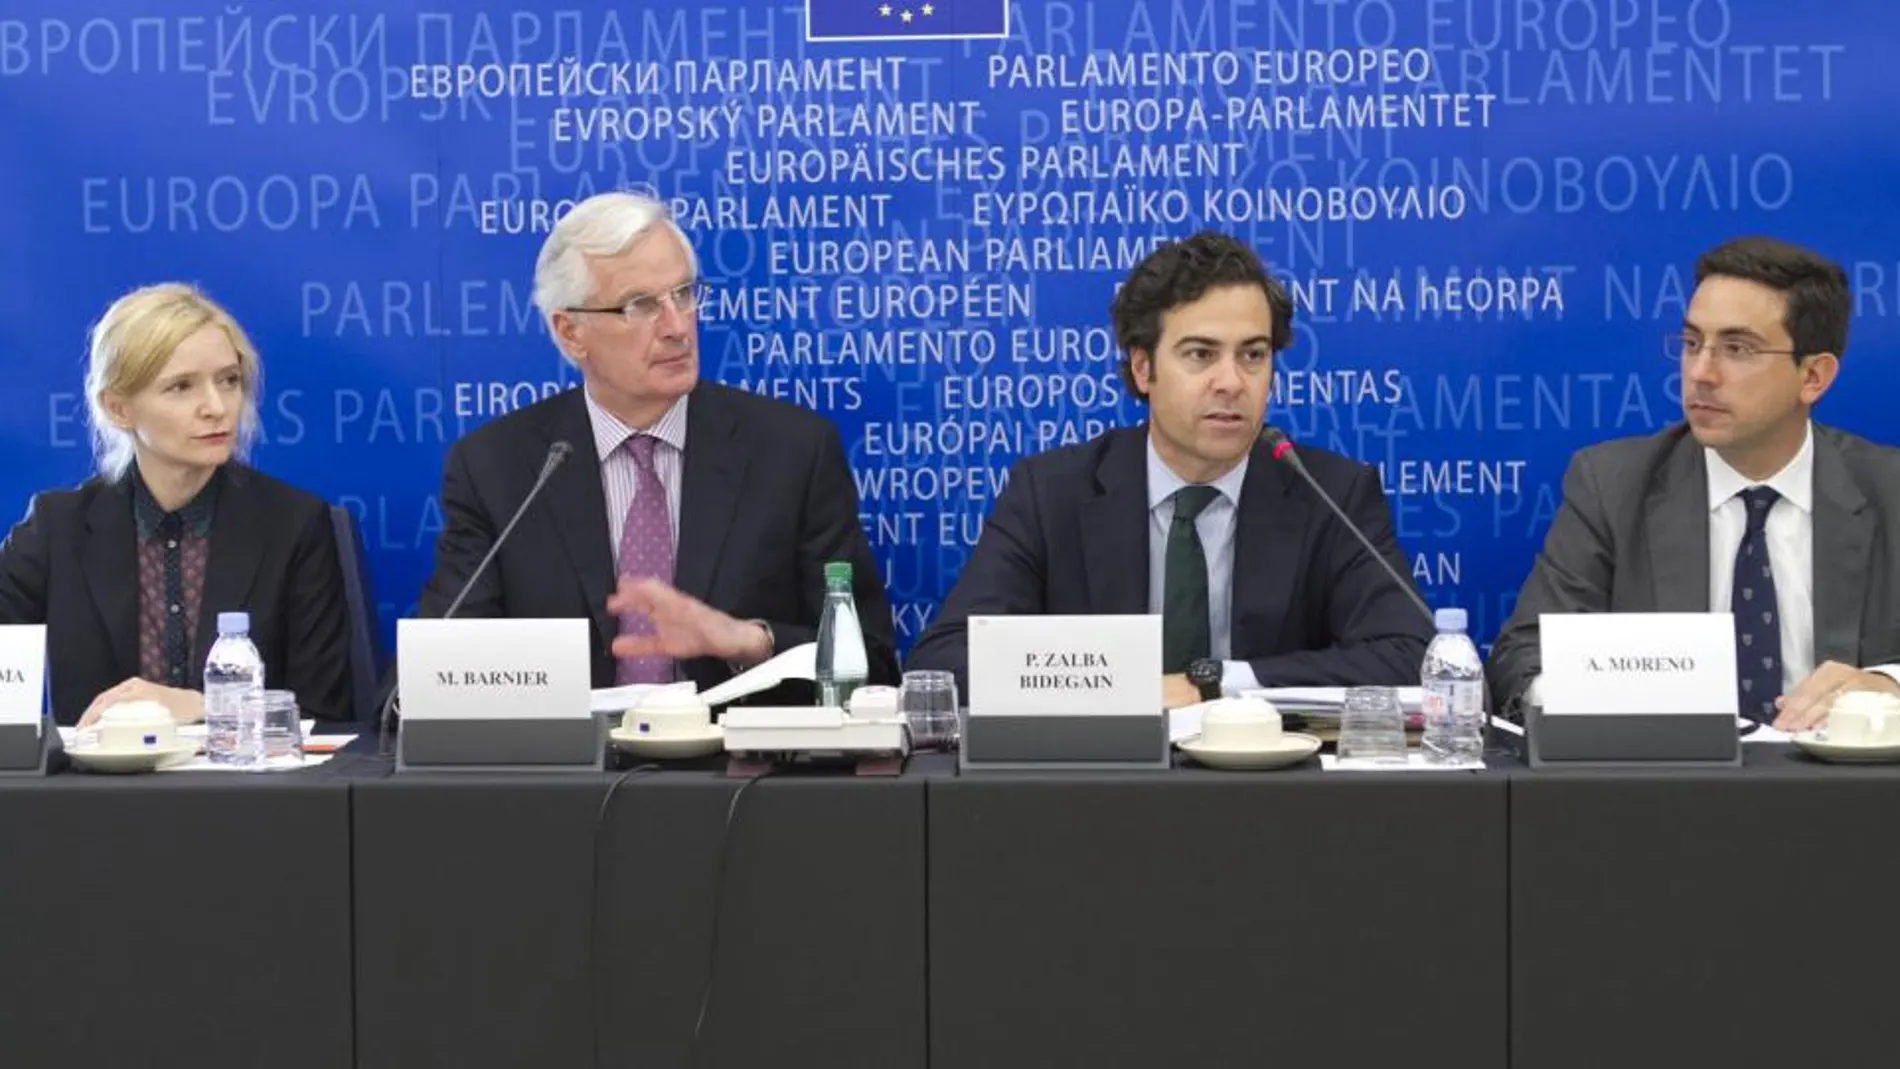 Laura Valderrama, el comisario Michel Barnier, el eurodiputado Pablo Zalba, y el profesor Antonio Moreno